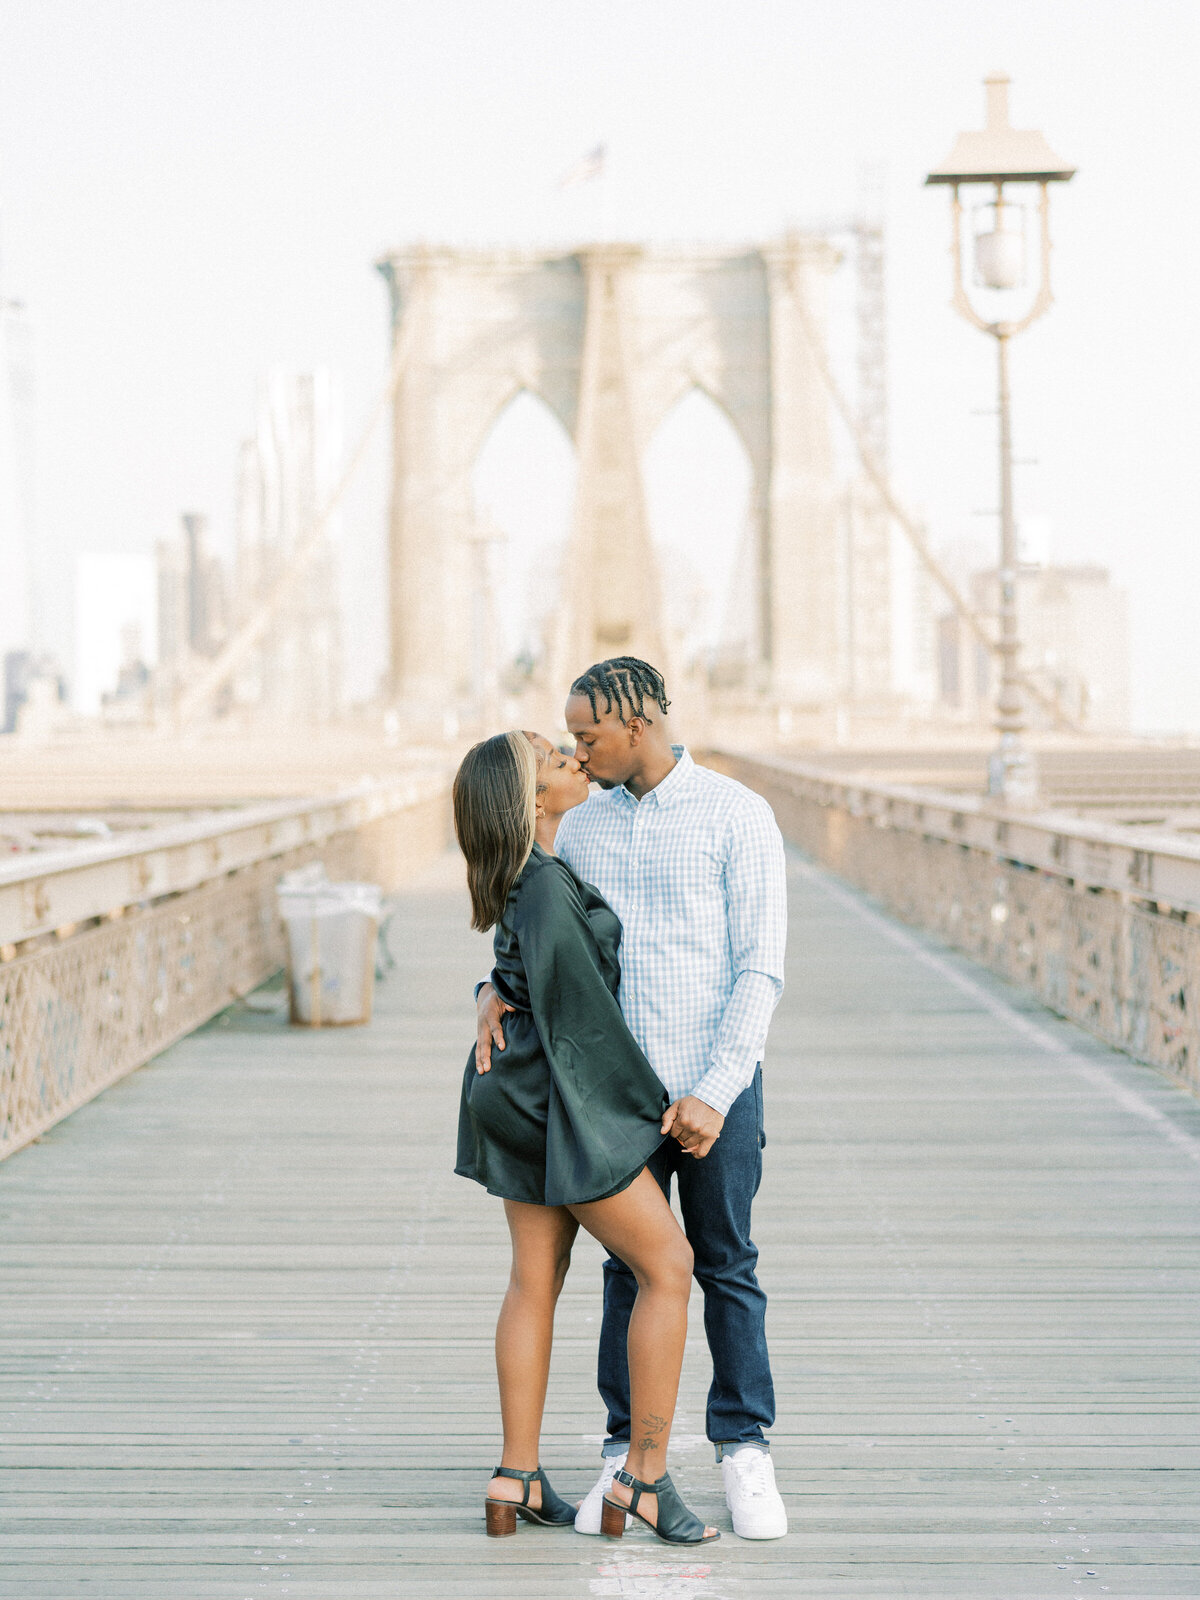 Brooklyn Bridge and DUMBO Sunrise, Engagement Session | Amarachi Ikeji Photography 11